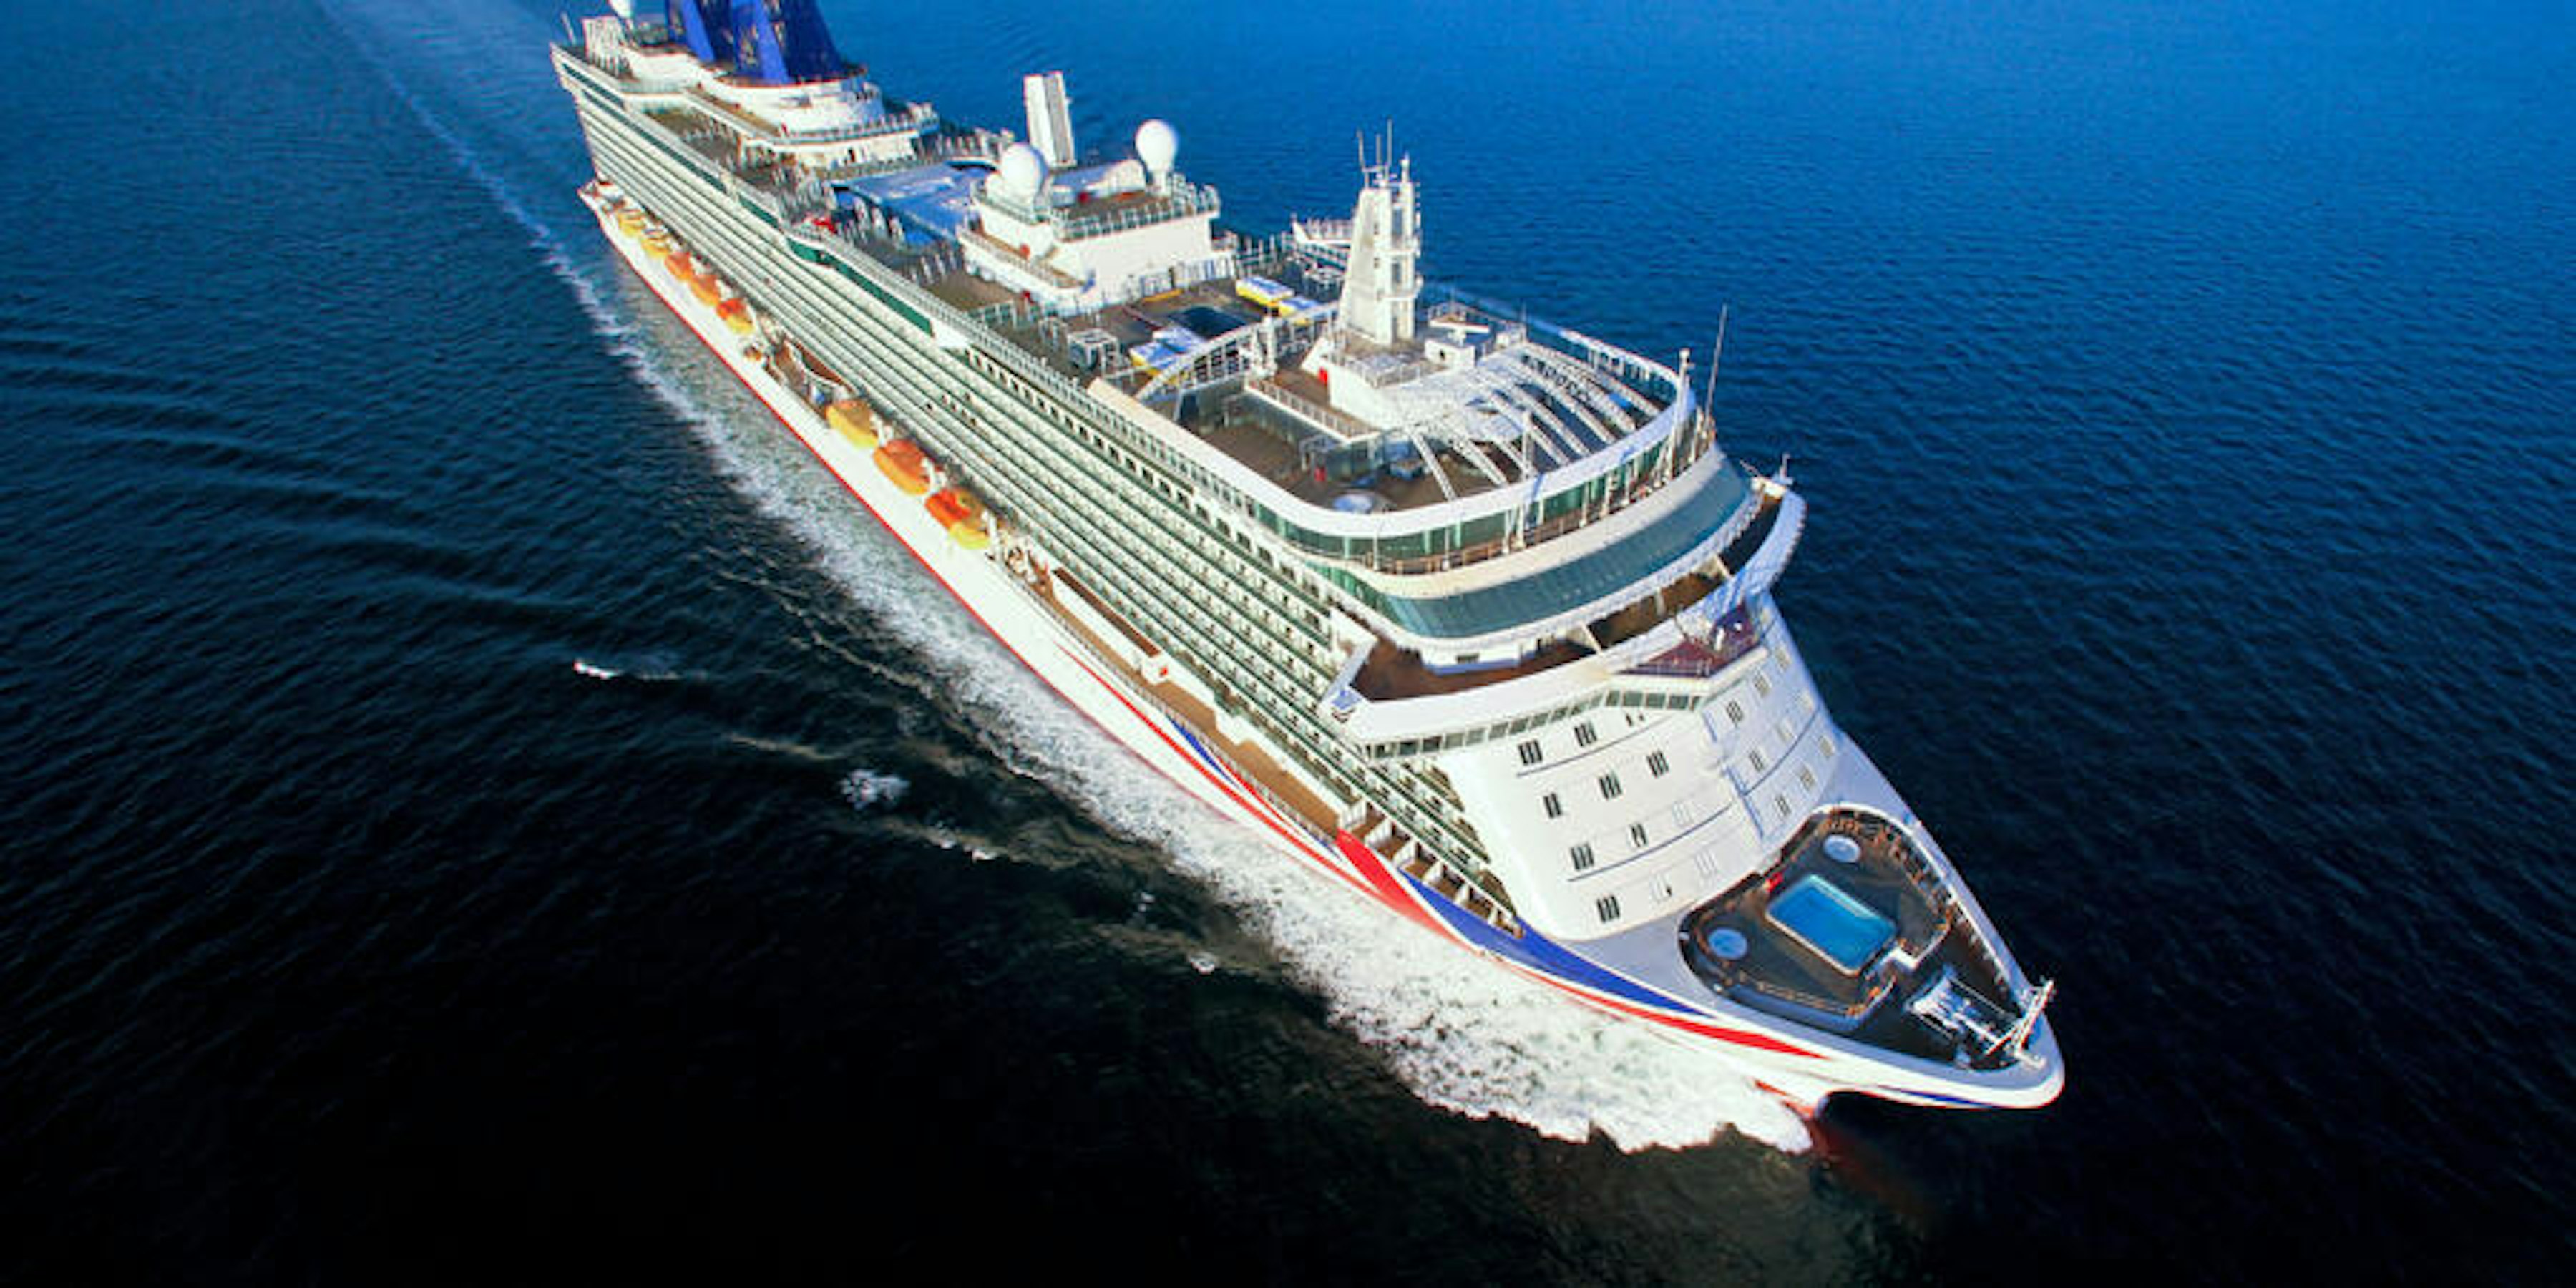 Exclusive P&O Cruises Reveals Details on Britannia's Refit